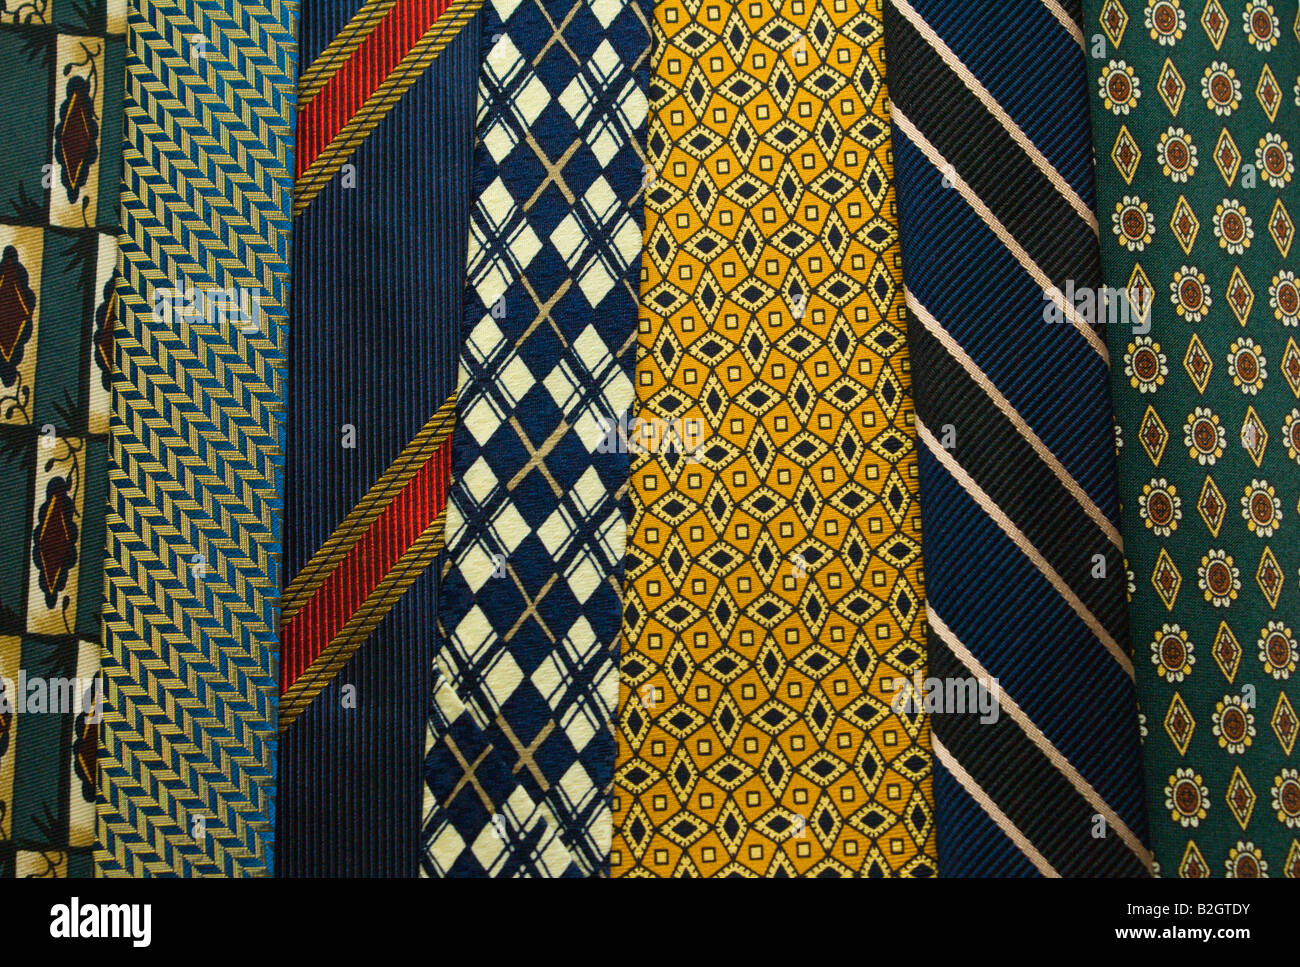 Farbige Krawatten Stockfoto